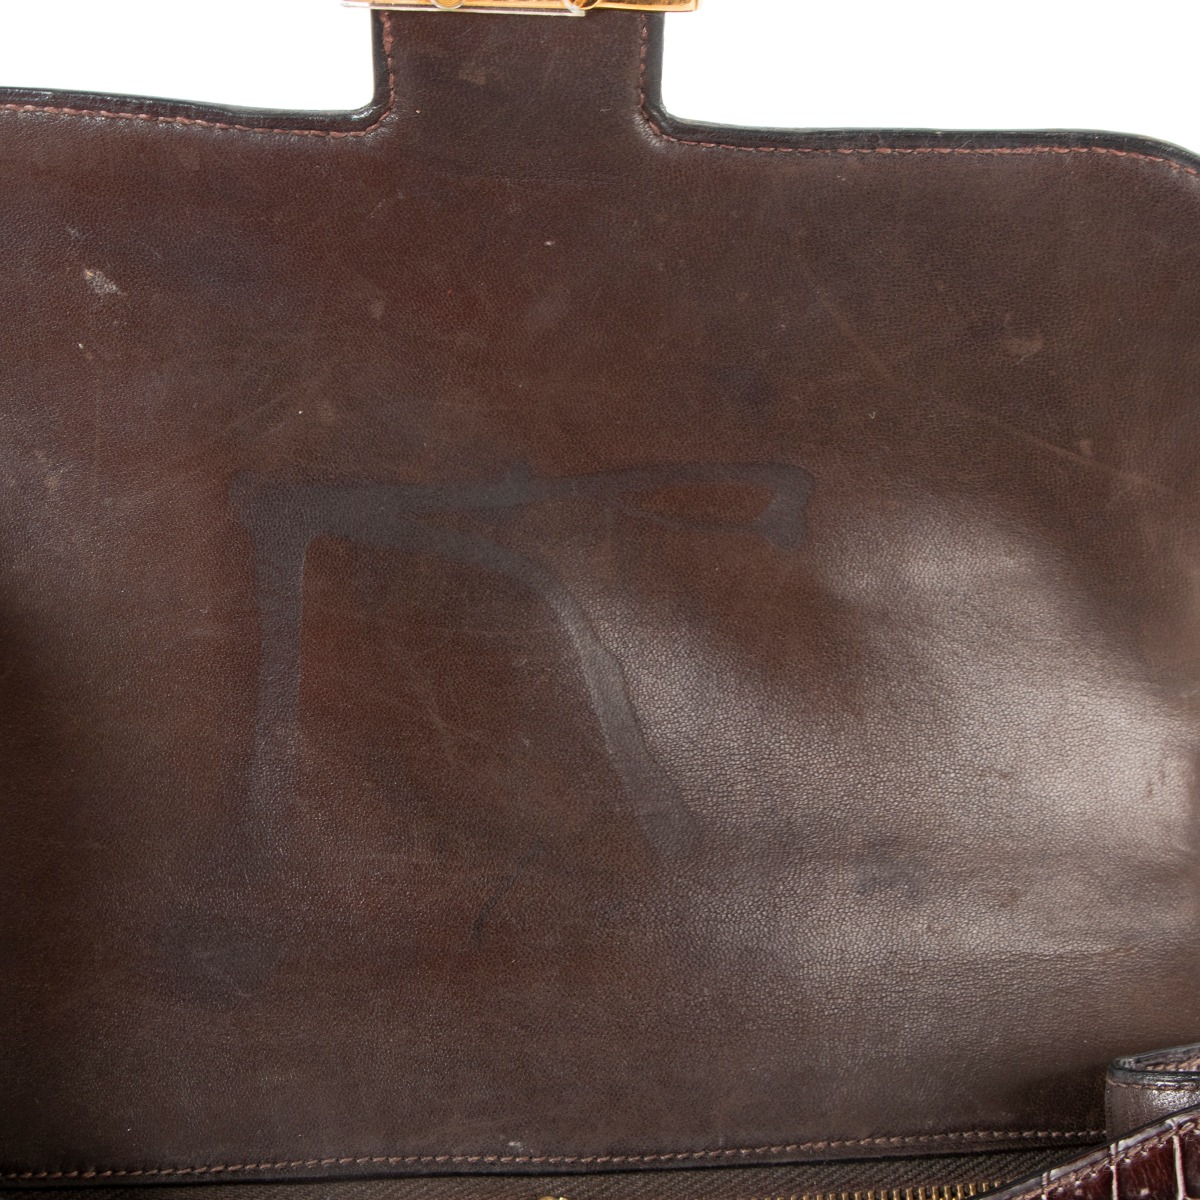 67174 auth HERMES Rouge H burgundy Box leather CONSTANCE 23 Shoulder Bag  VINTAGE